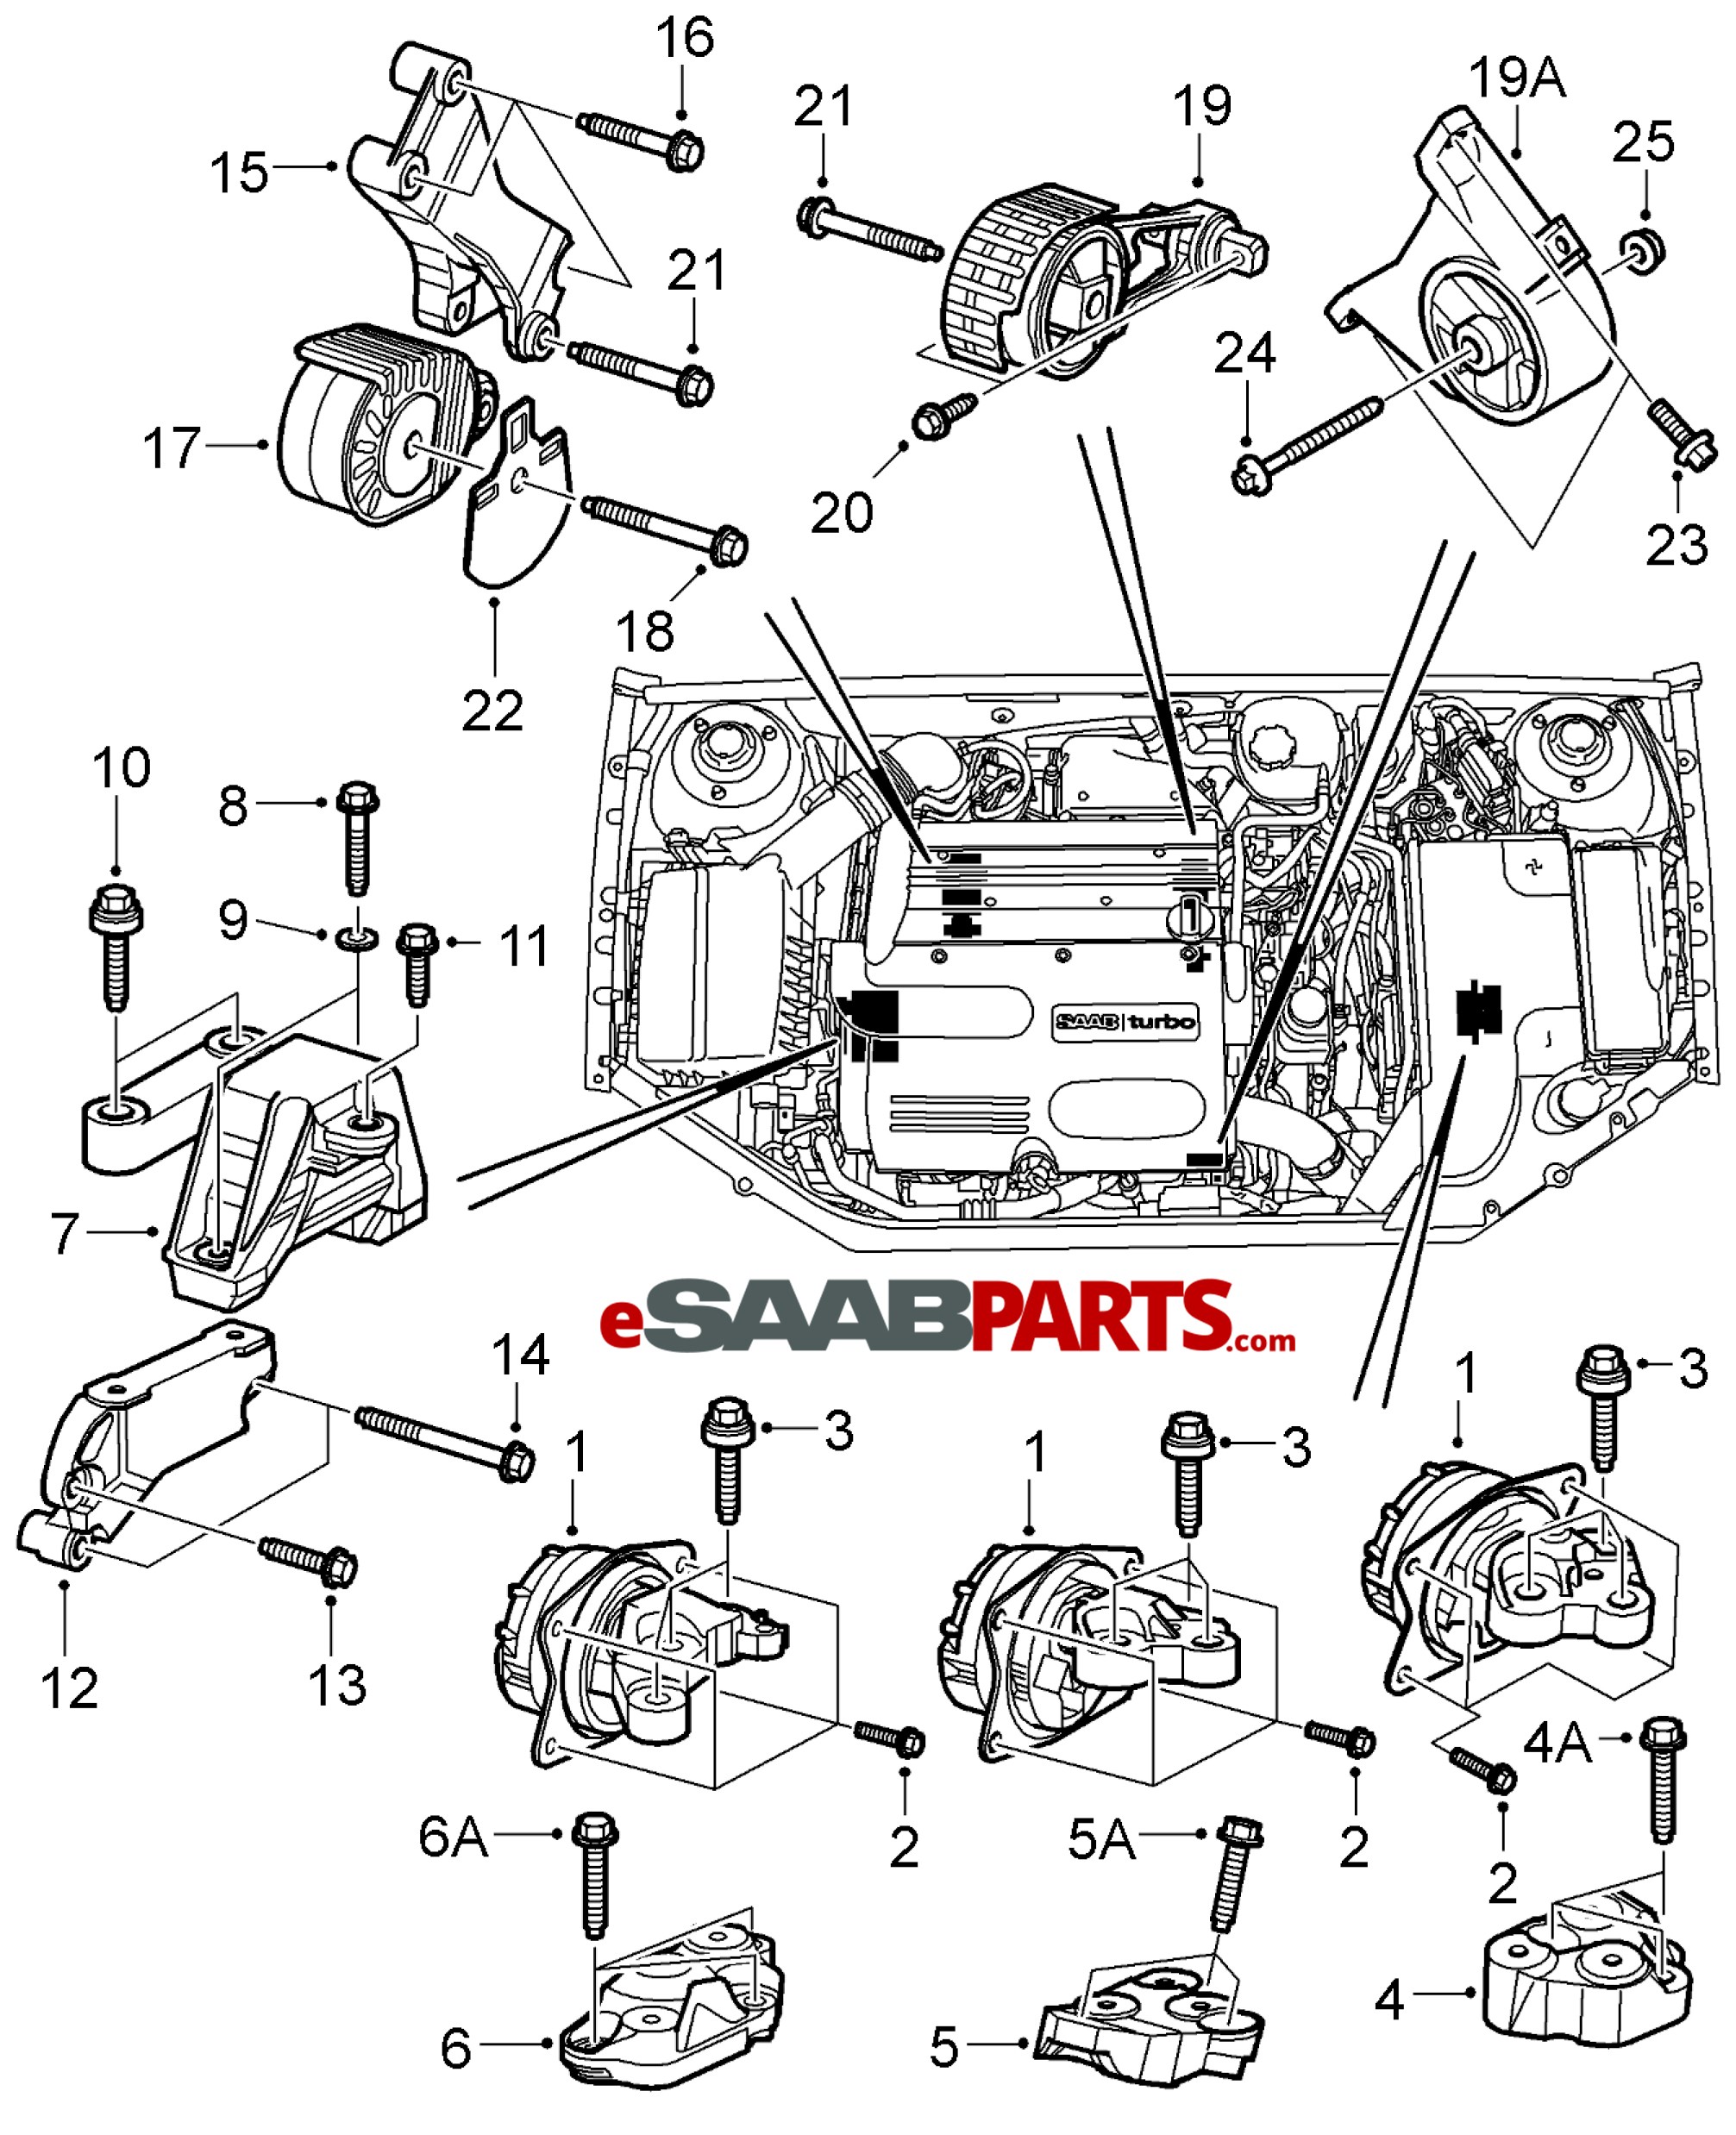 2000 Saab 9 5 Engine Diagram Wiring Diagrams Saab C900 for Wiring Diagram Used Of 2000 Saab 9 5 Engine Diagram